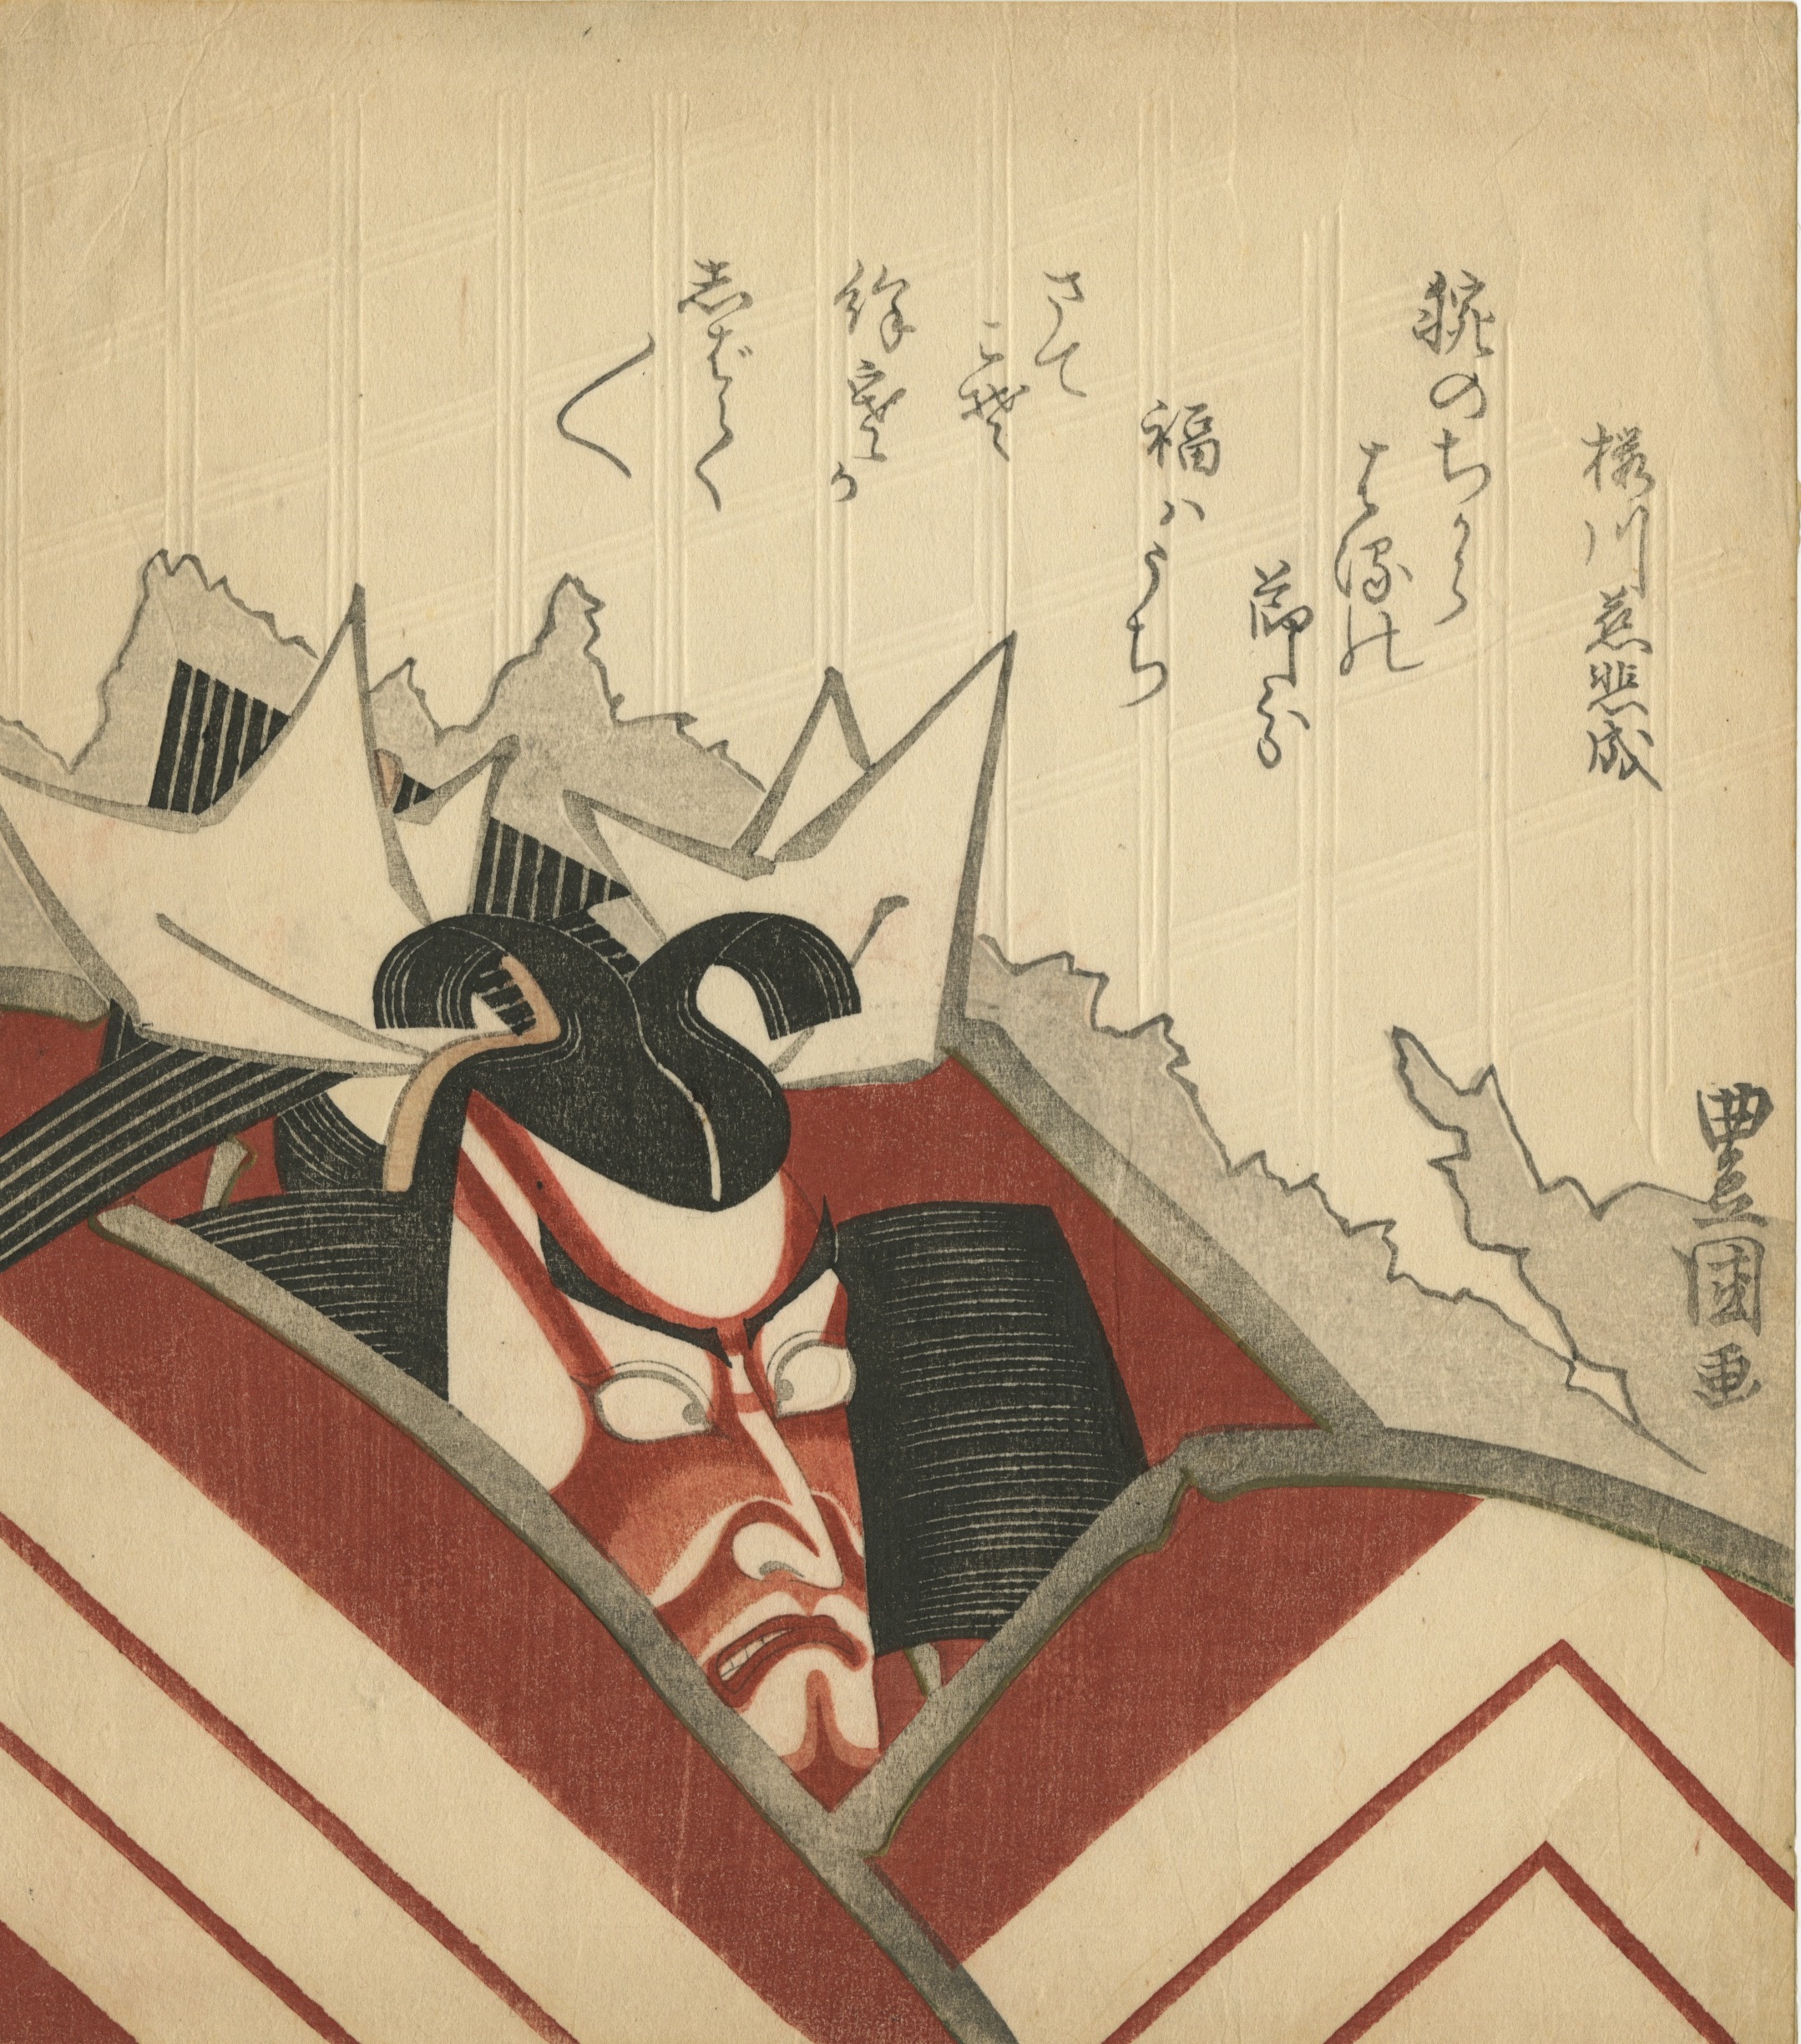 Utagawa Kunisada. Surimono. Ichikawa Danjūrō VII in a shibaraku costume bursting through a paper screen.